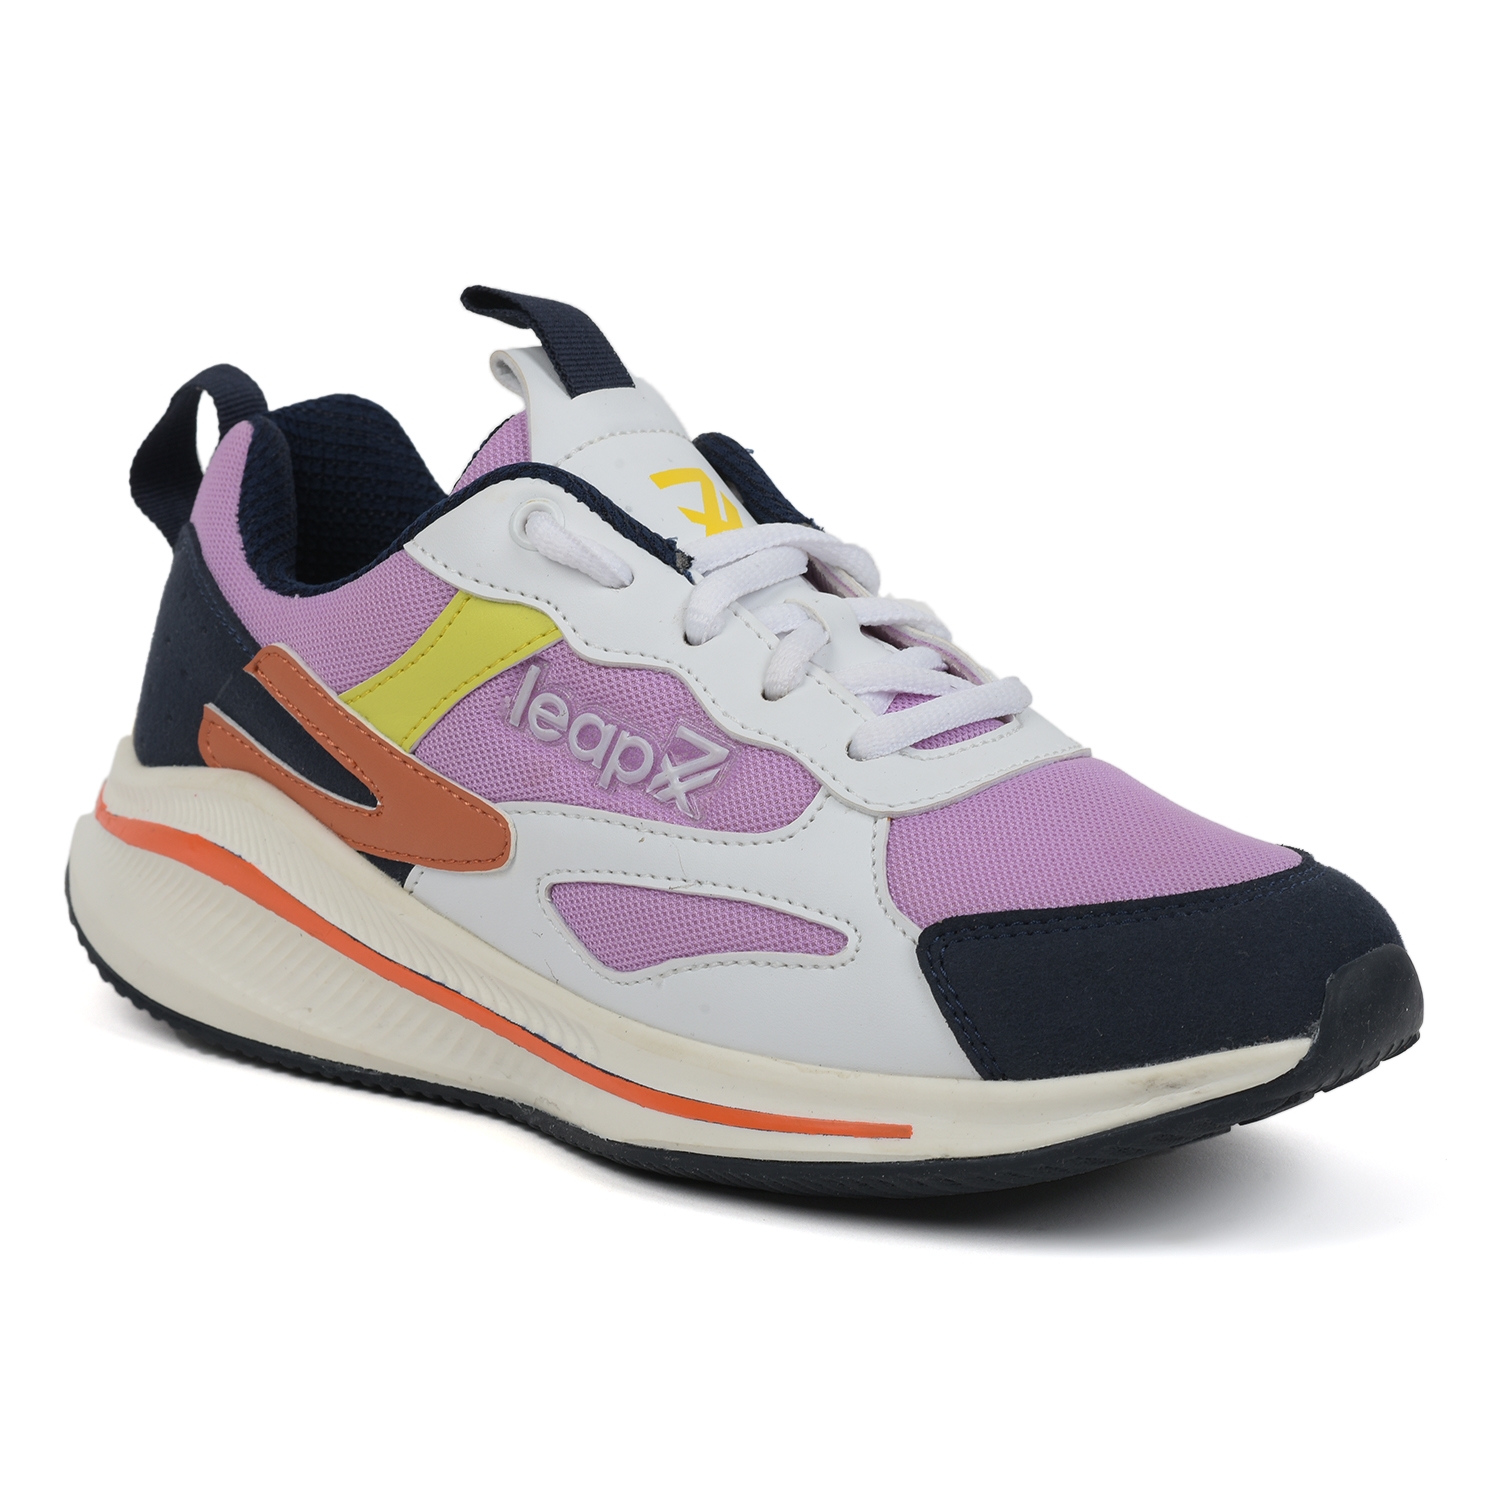 Women's Leap7X Mesh Purple Running Shoes